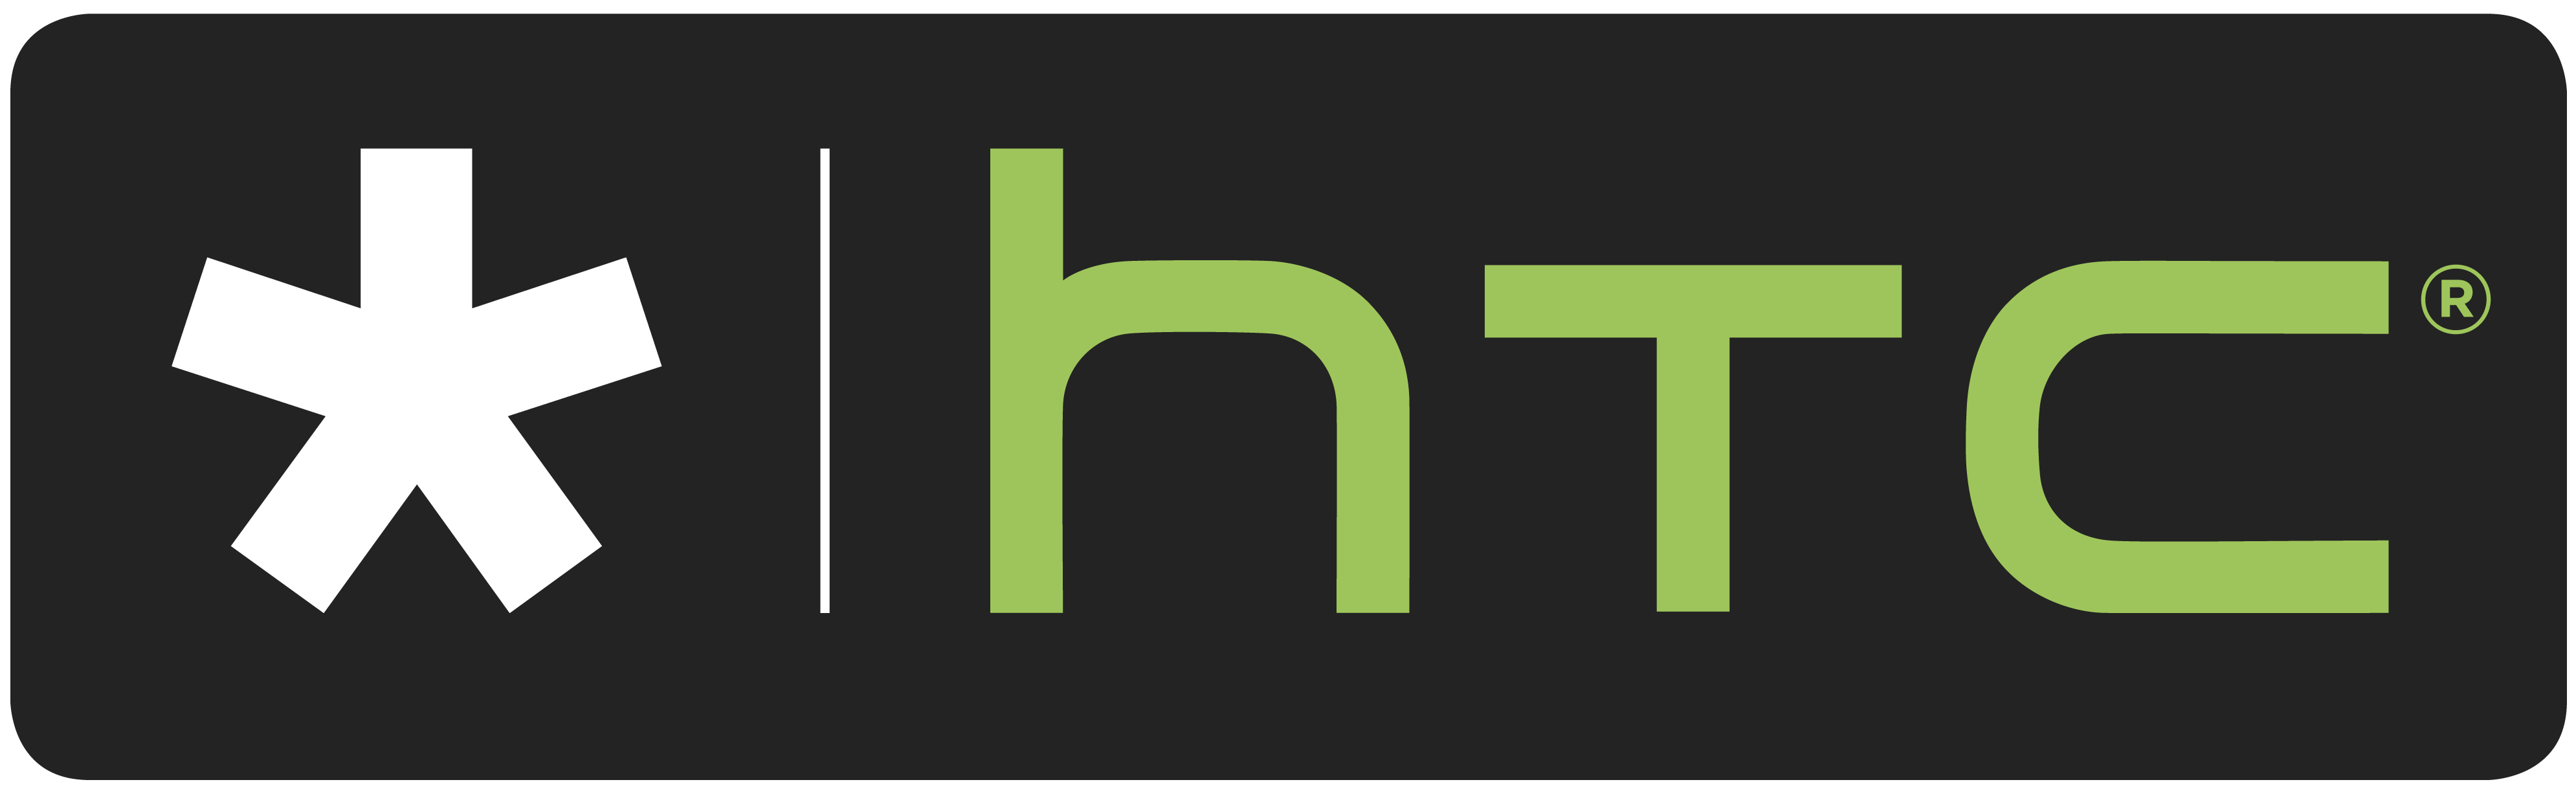 HTC_Wallpaper_Logo_1-2